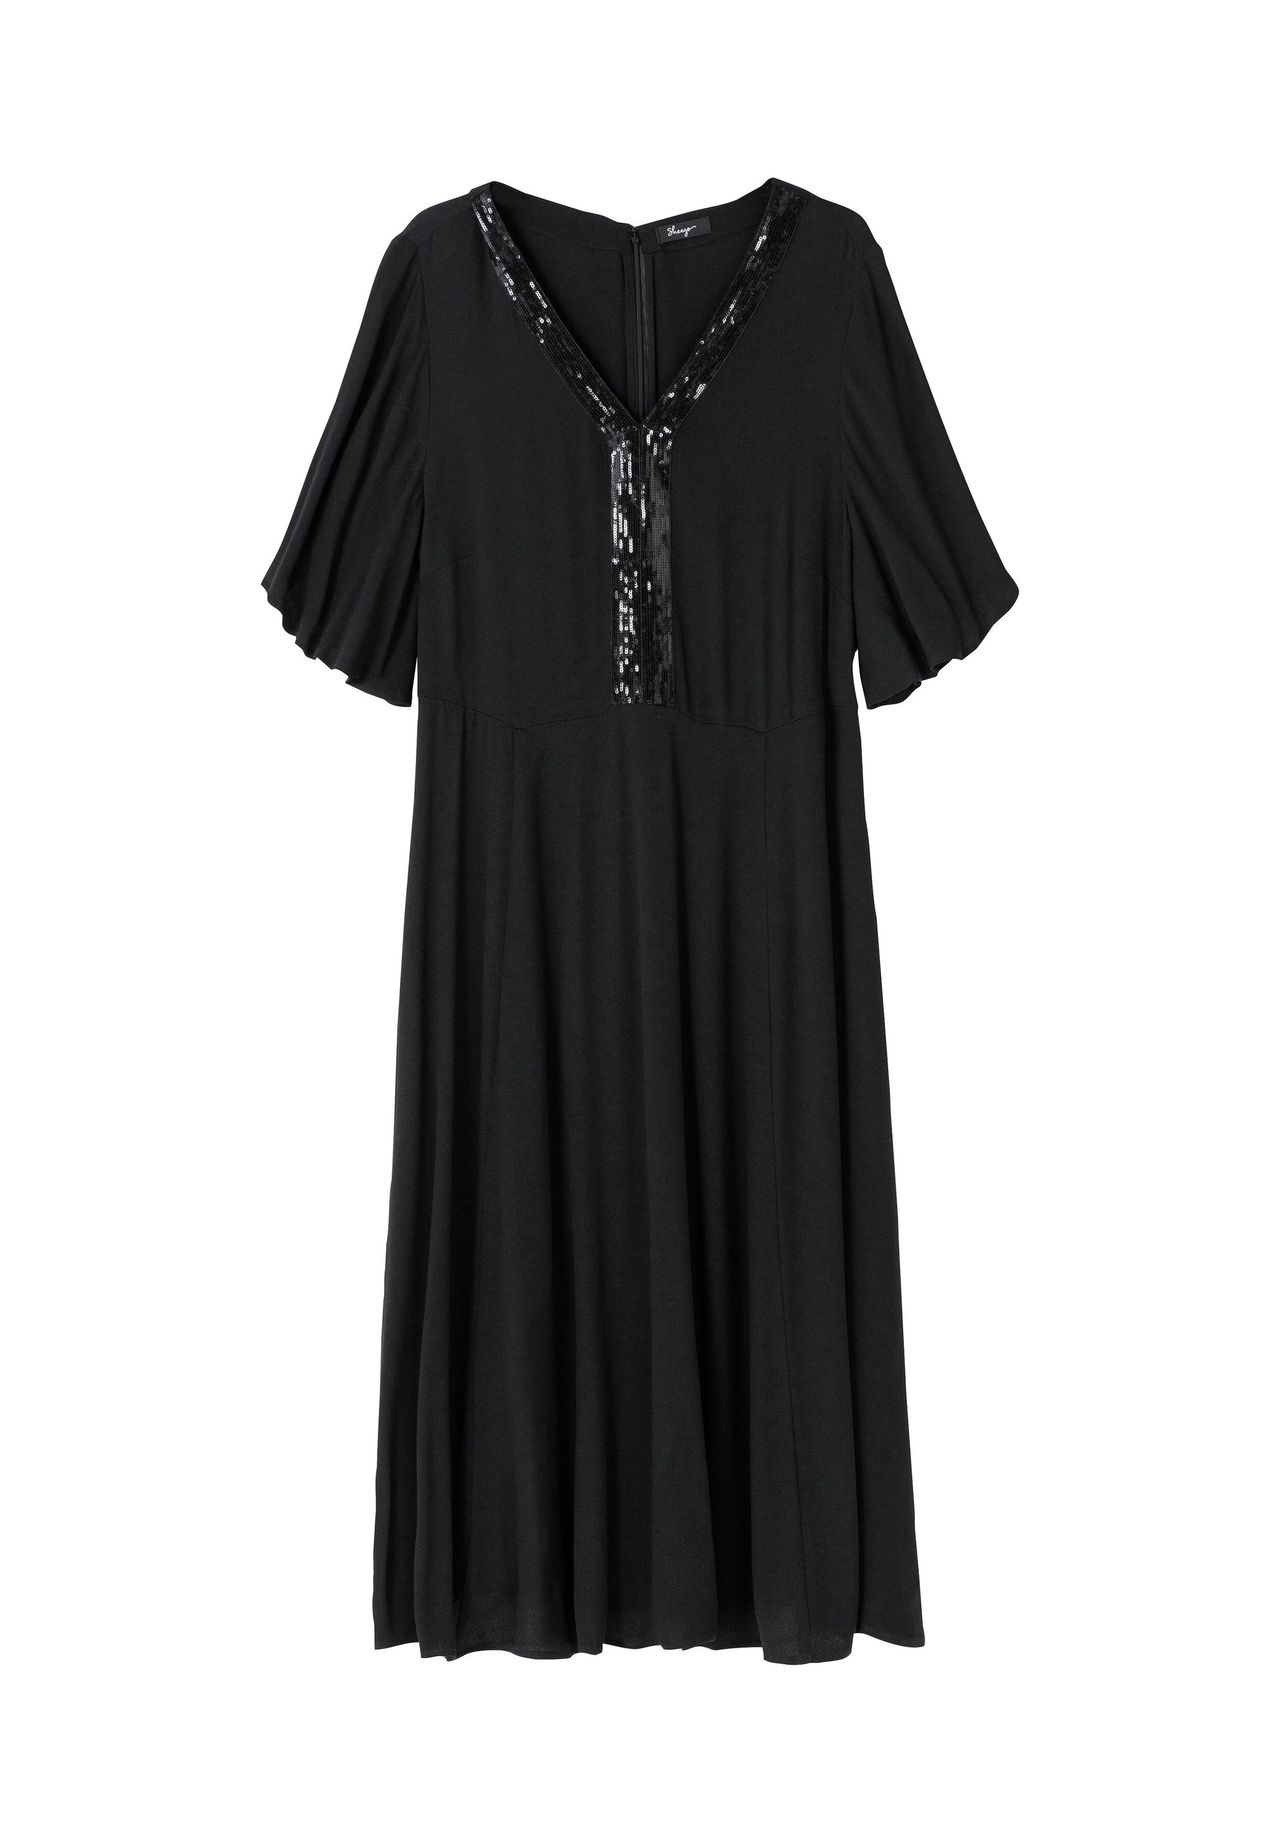 Abendkleid lang schwarz kaufen | GALERIA